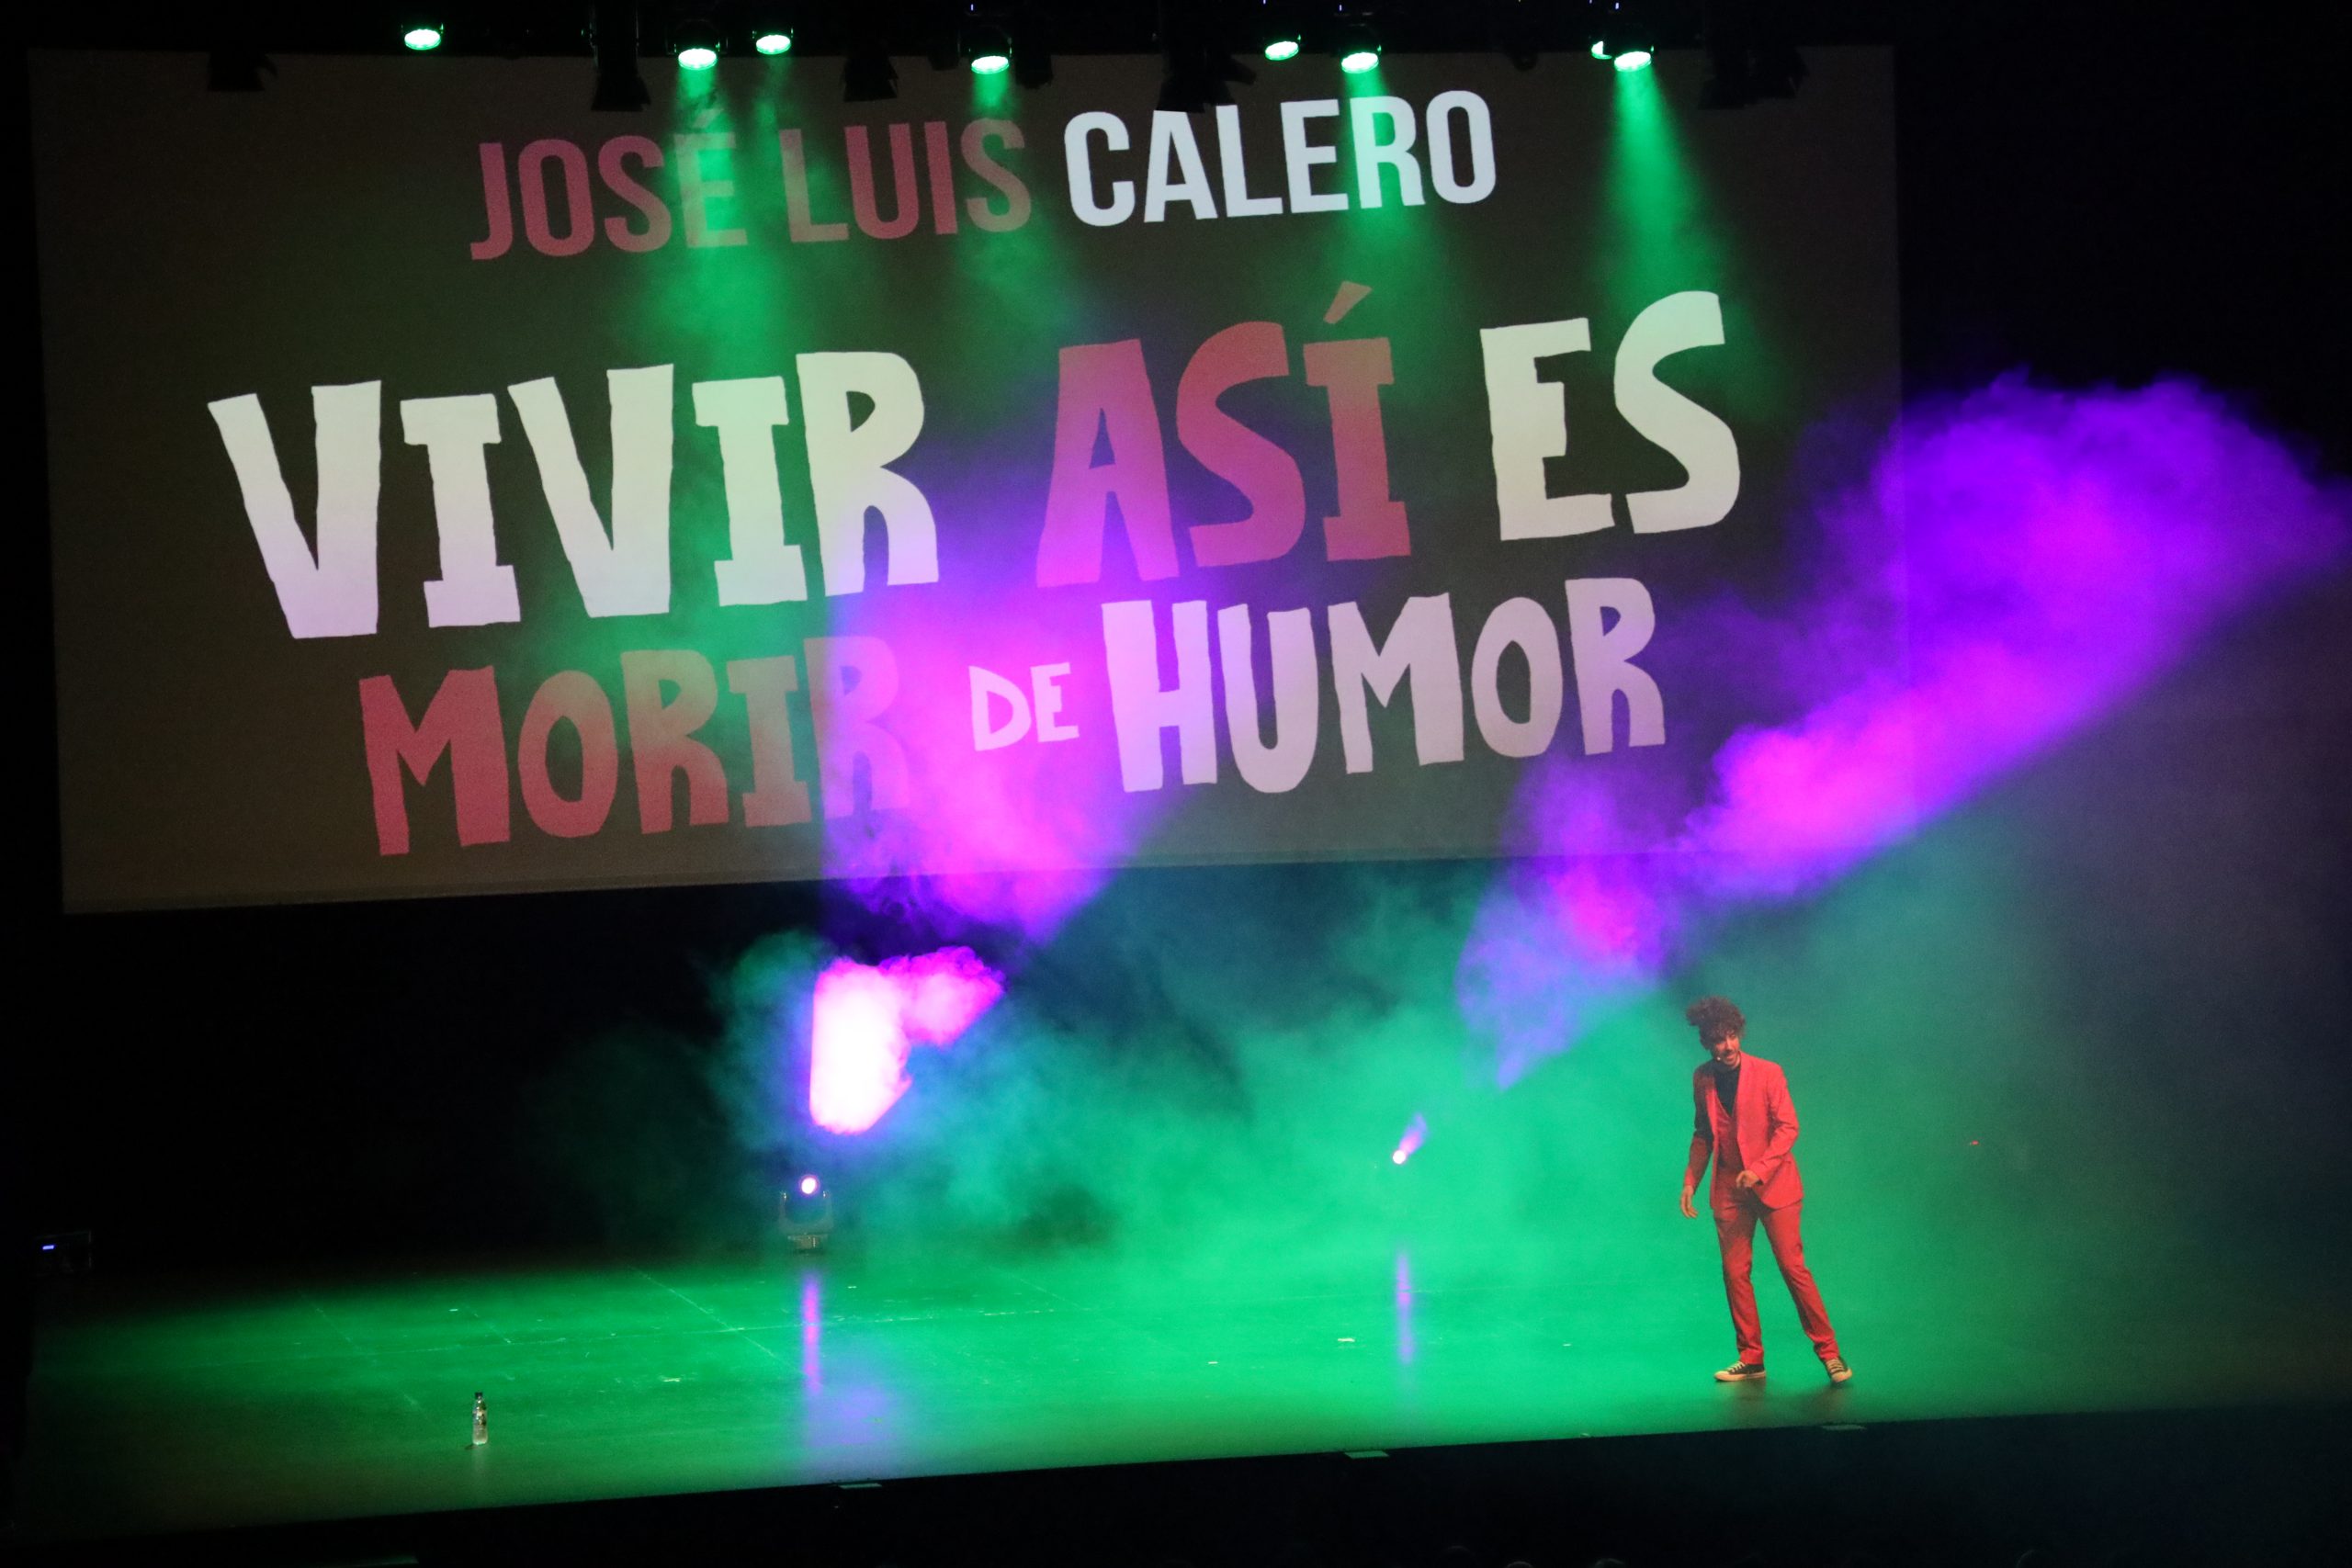 El humorista sevillano José Luis Calero hace reír al Teatro Auditorio de El Ejido